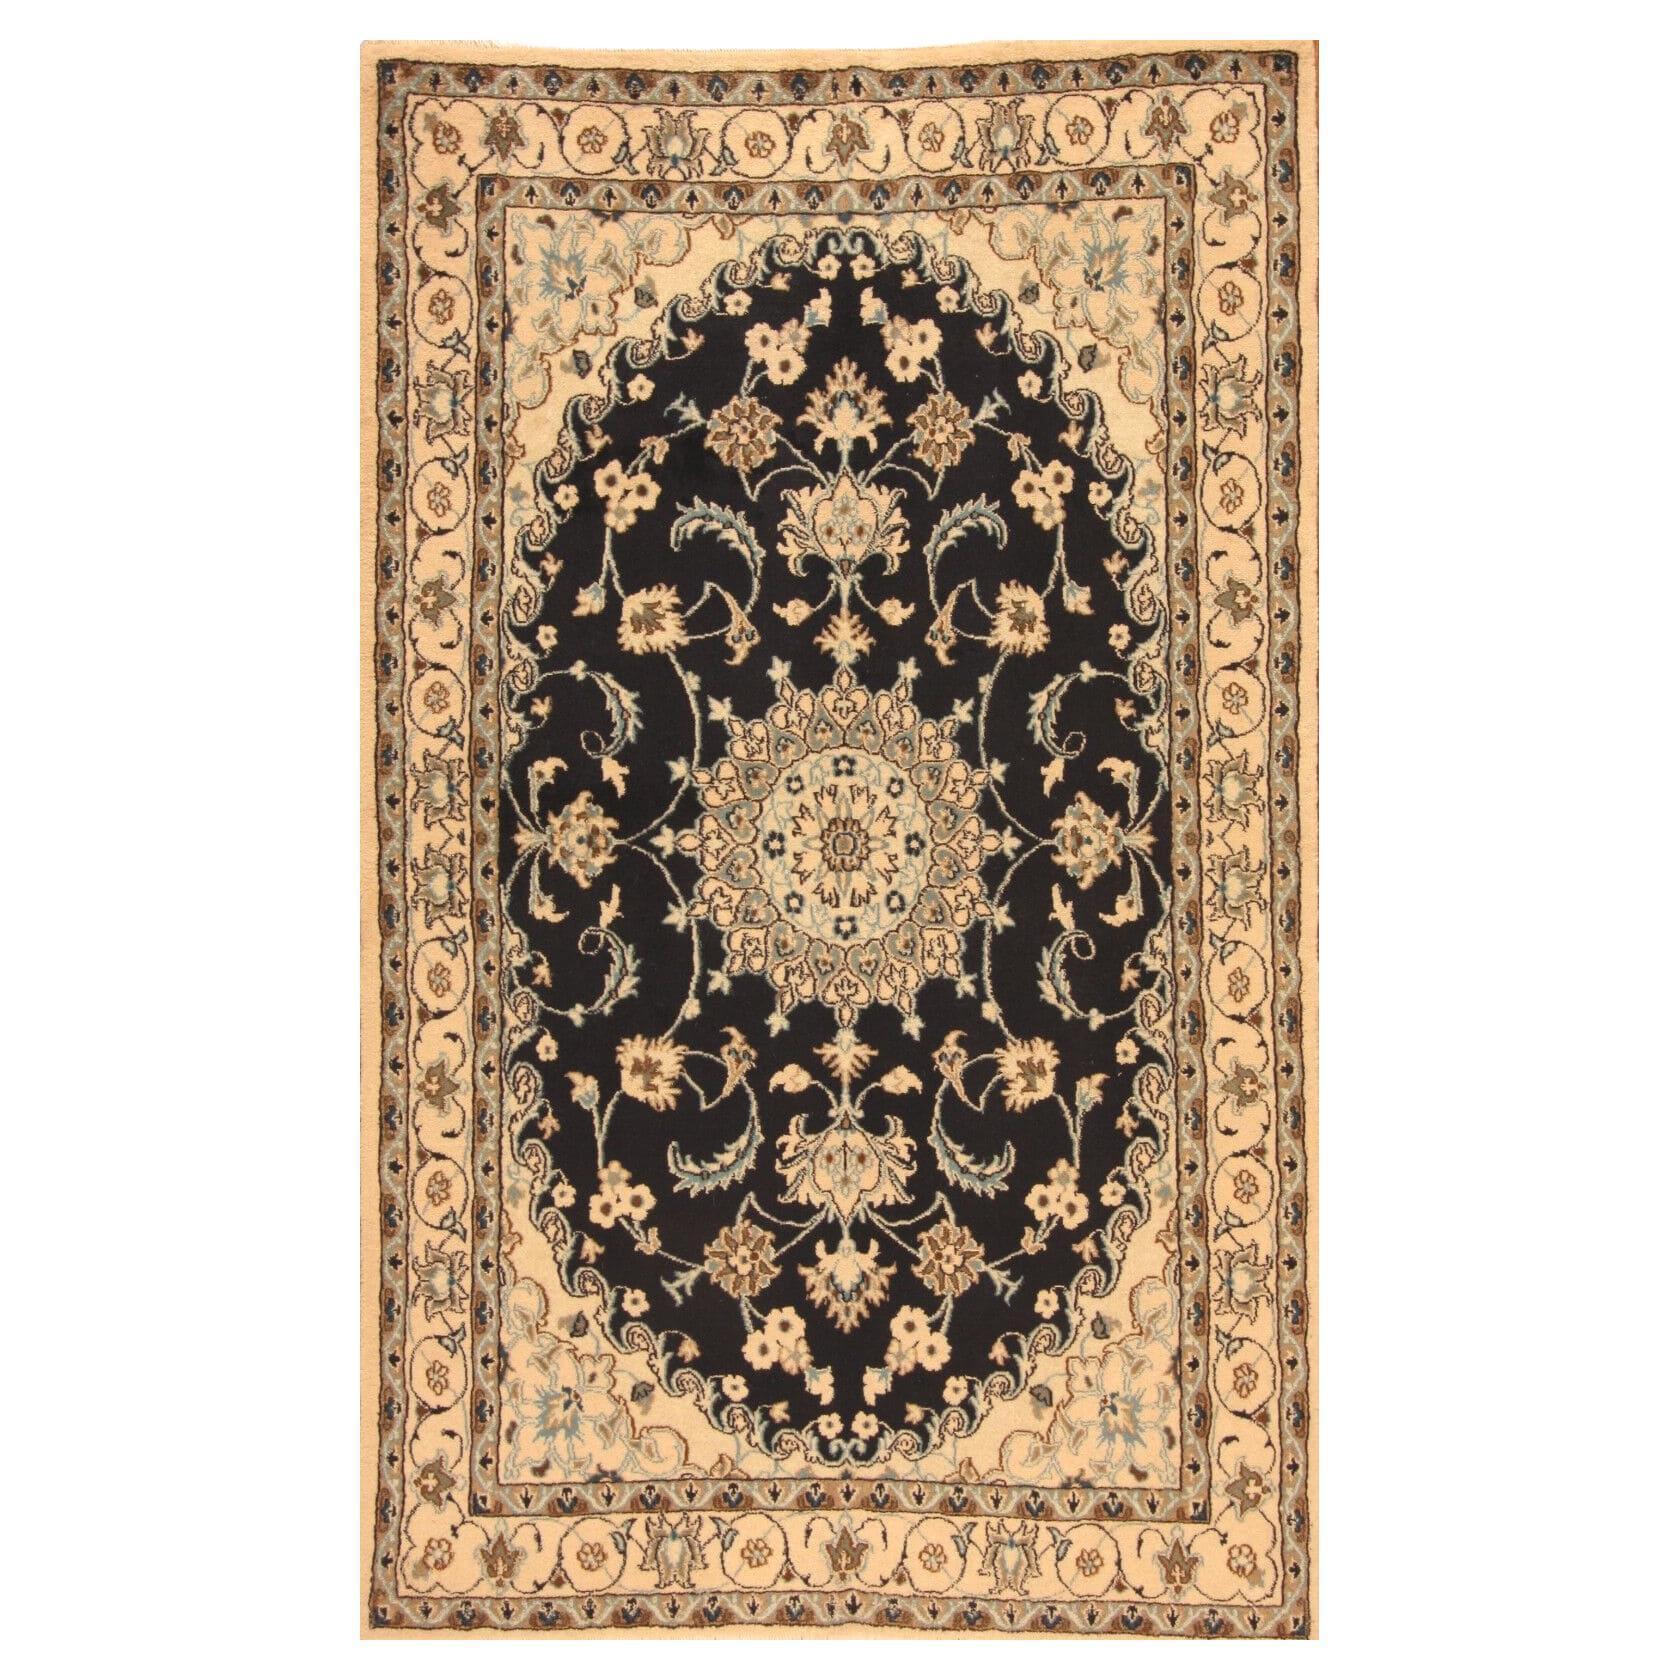 Handgefertigter Nain-Teppich im persischen Stil 4' x 6.7', 1970er Jahre - 1T13